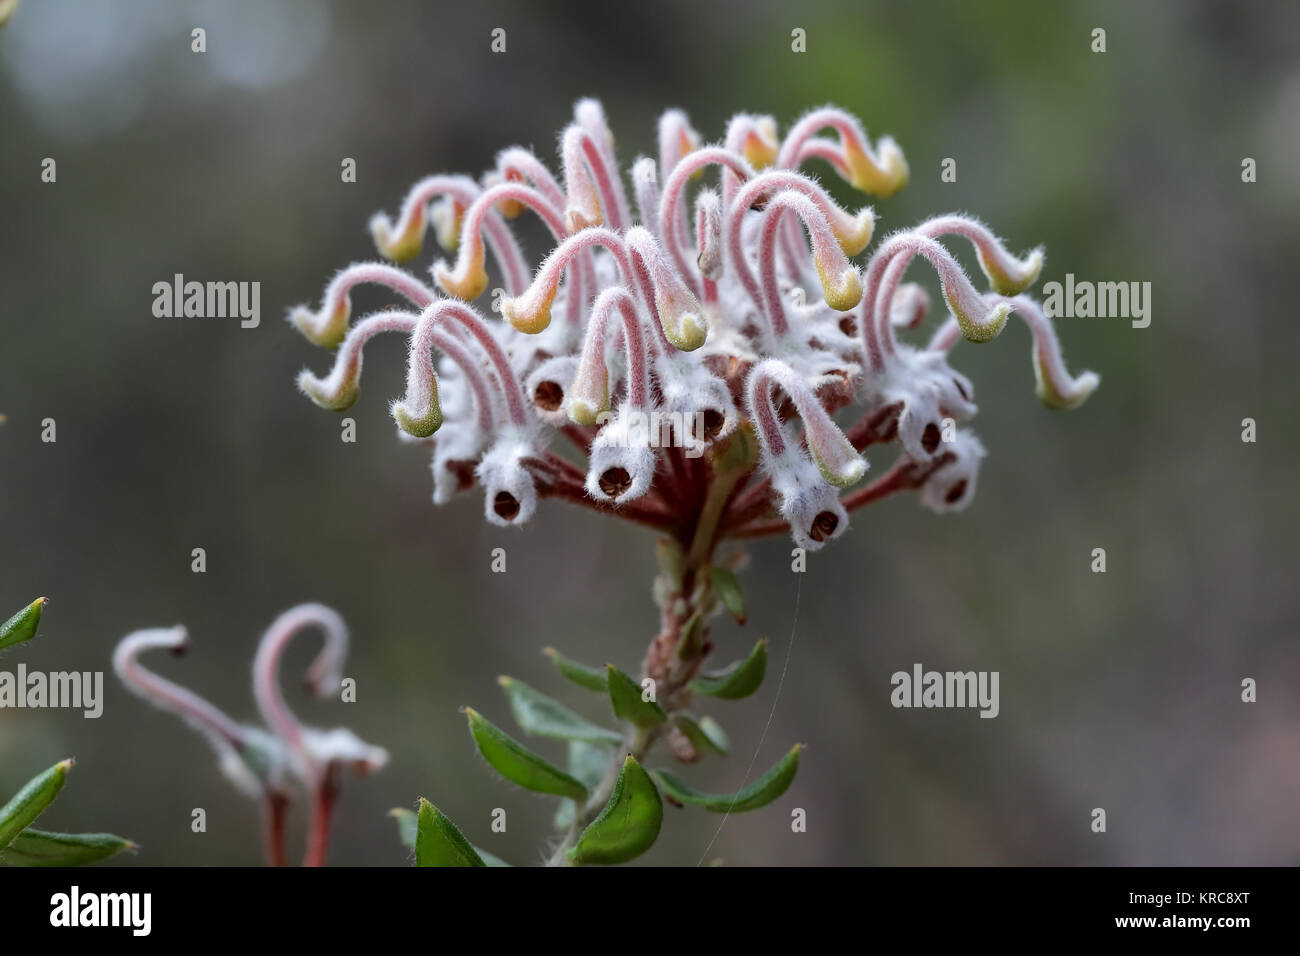 Grey Spider Flower Stock Photo